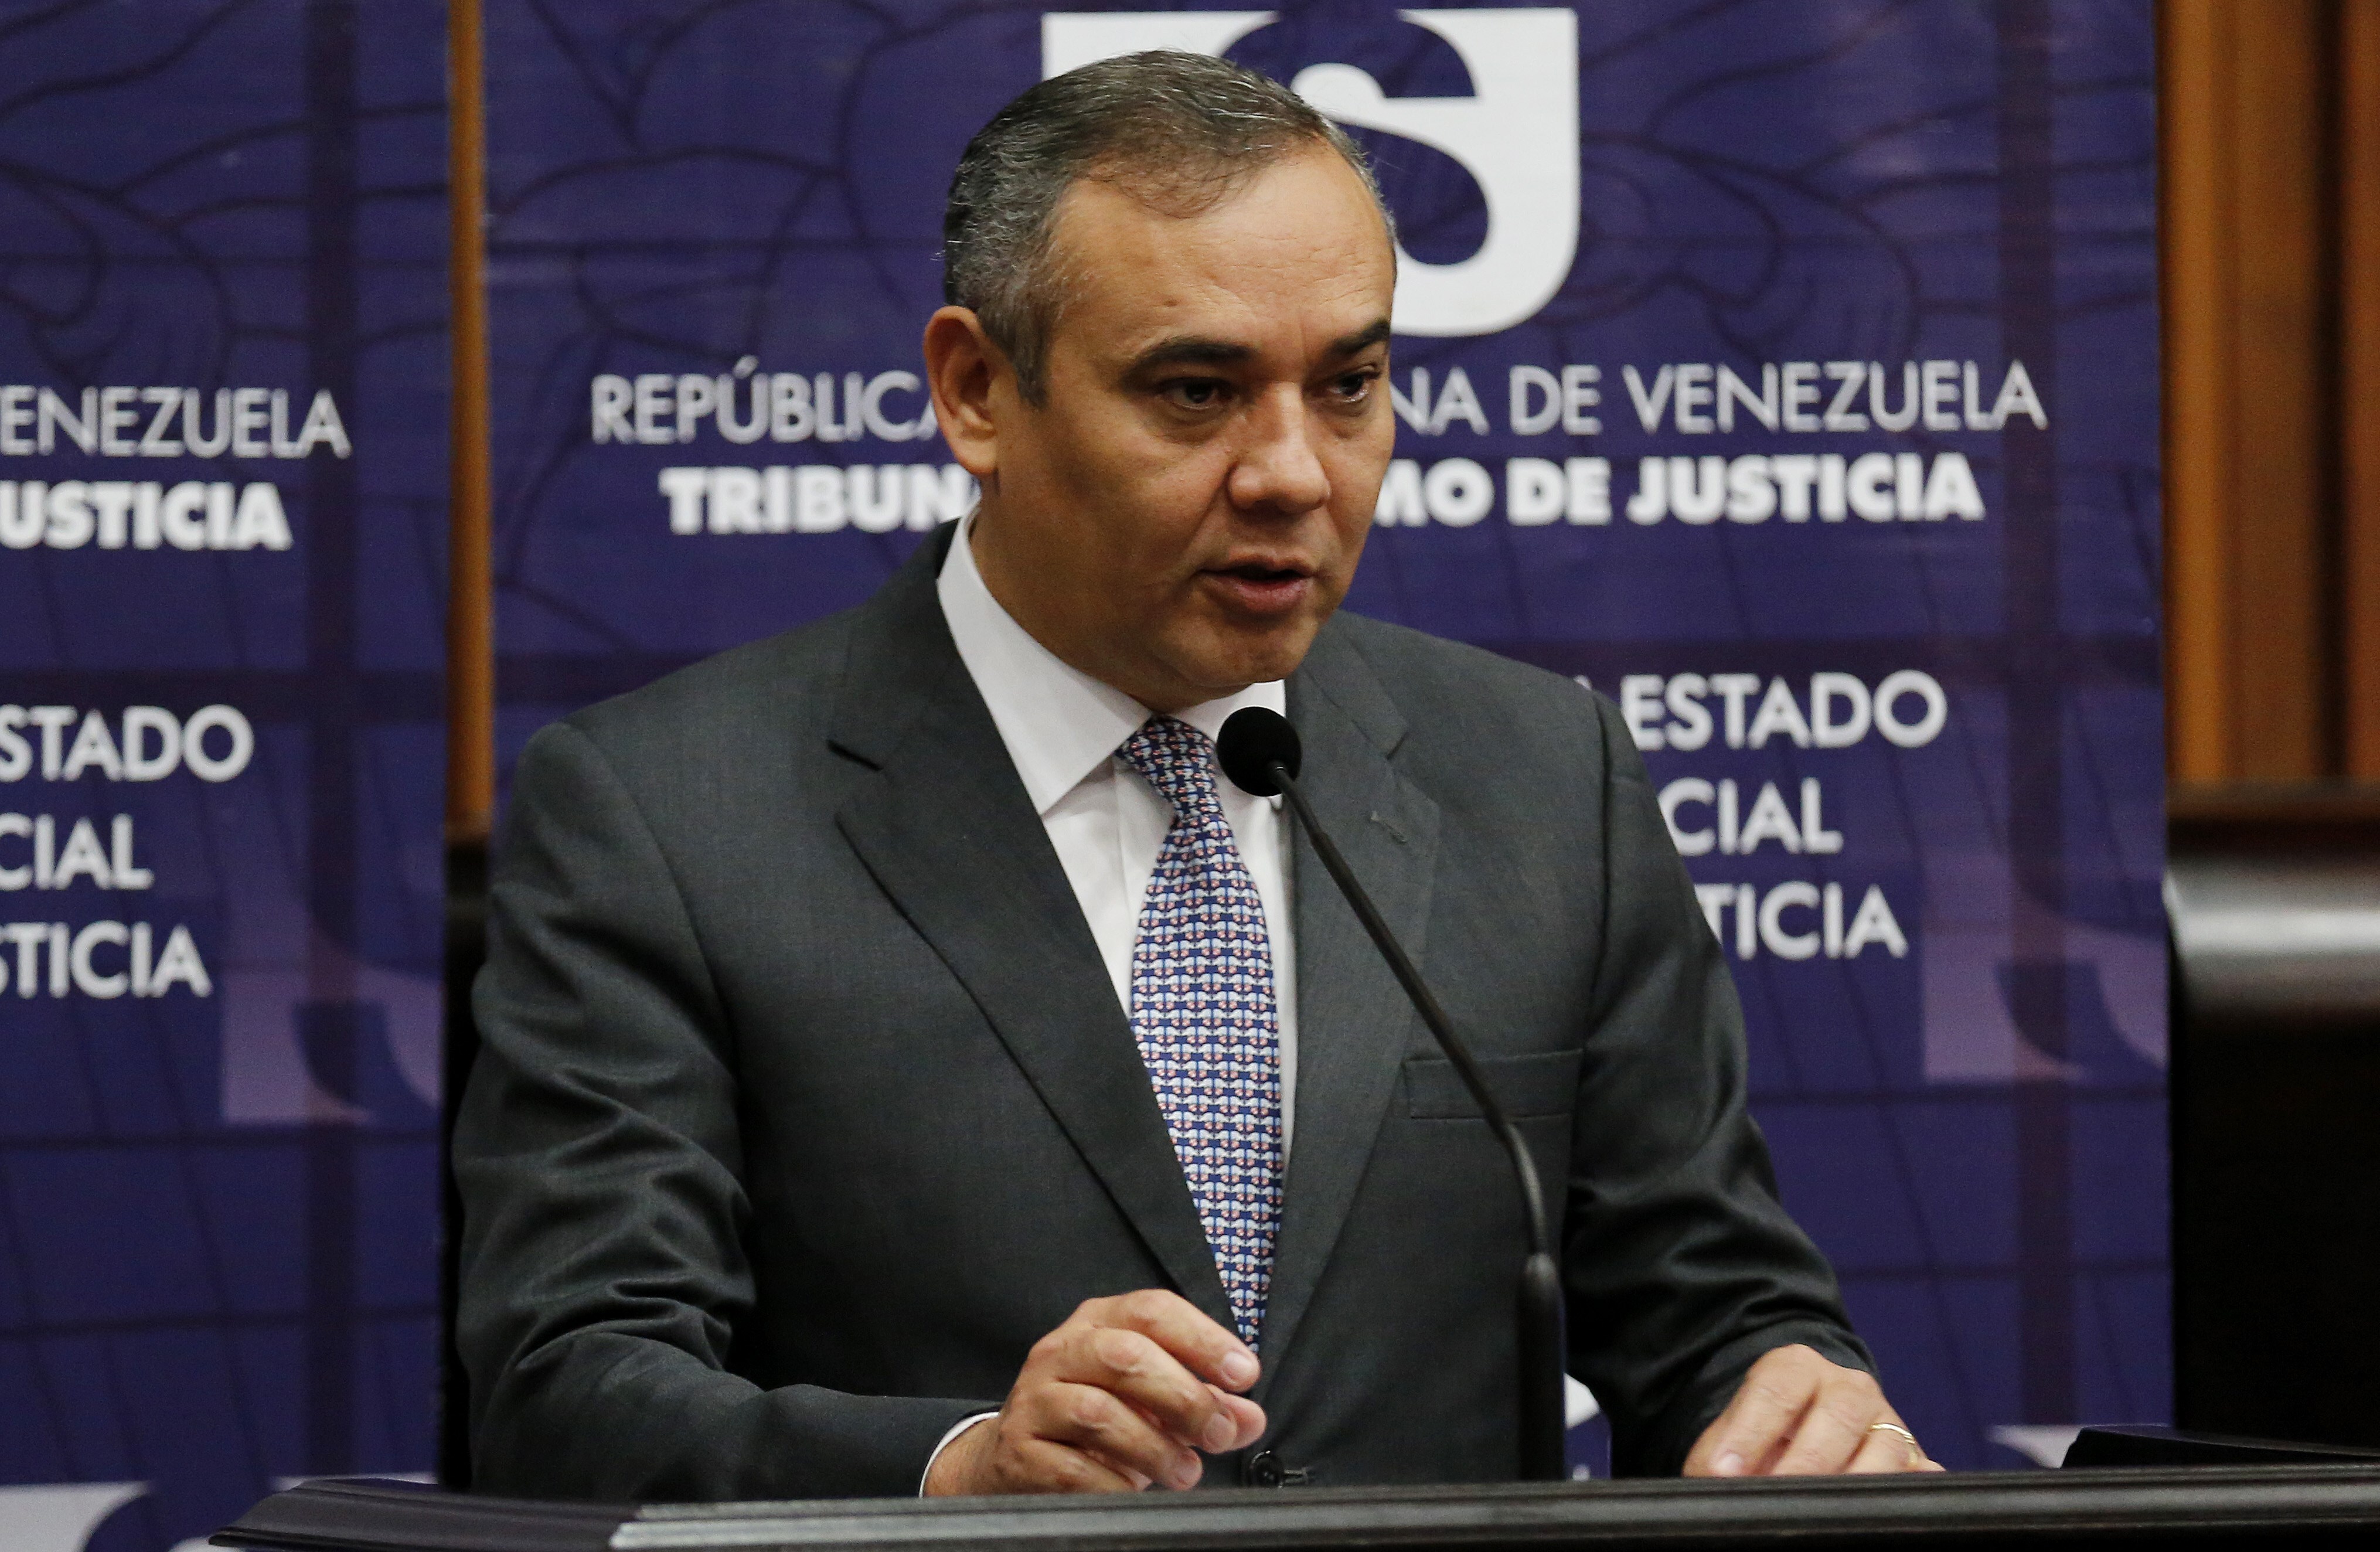 El presidente del Tribunal Supremo de Justicia de Venezuela, Maikel Moreno, en una fotografía de archivo. EFE/Leonardo Muñoz
